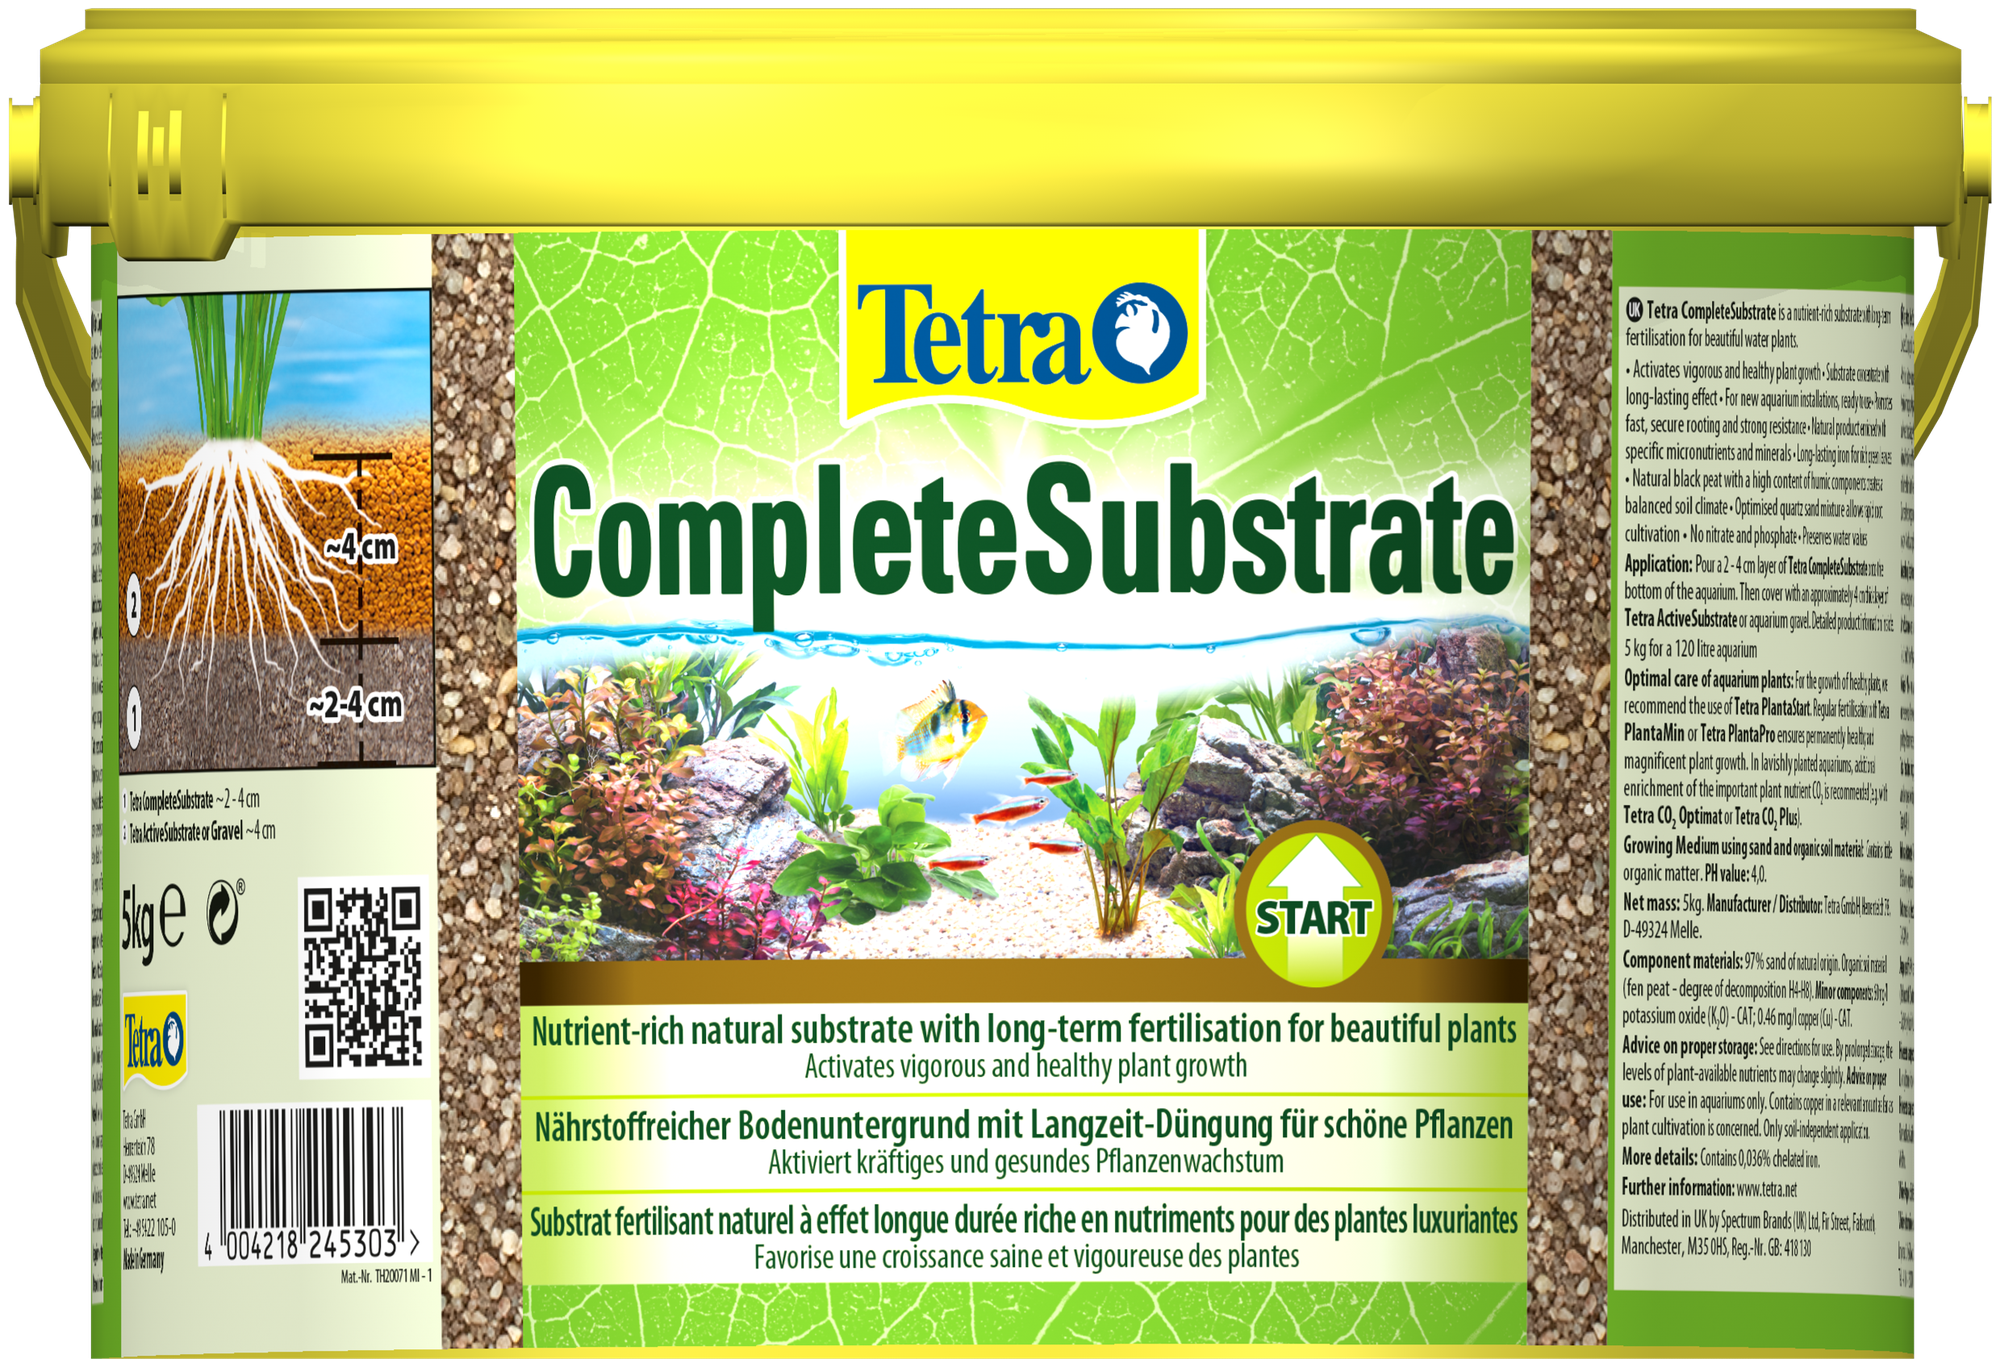 Грунт для растений Tetra CompleteSubstrate концентрированный субстрат 5кг